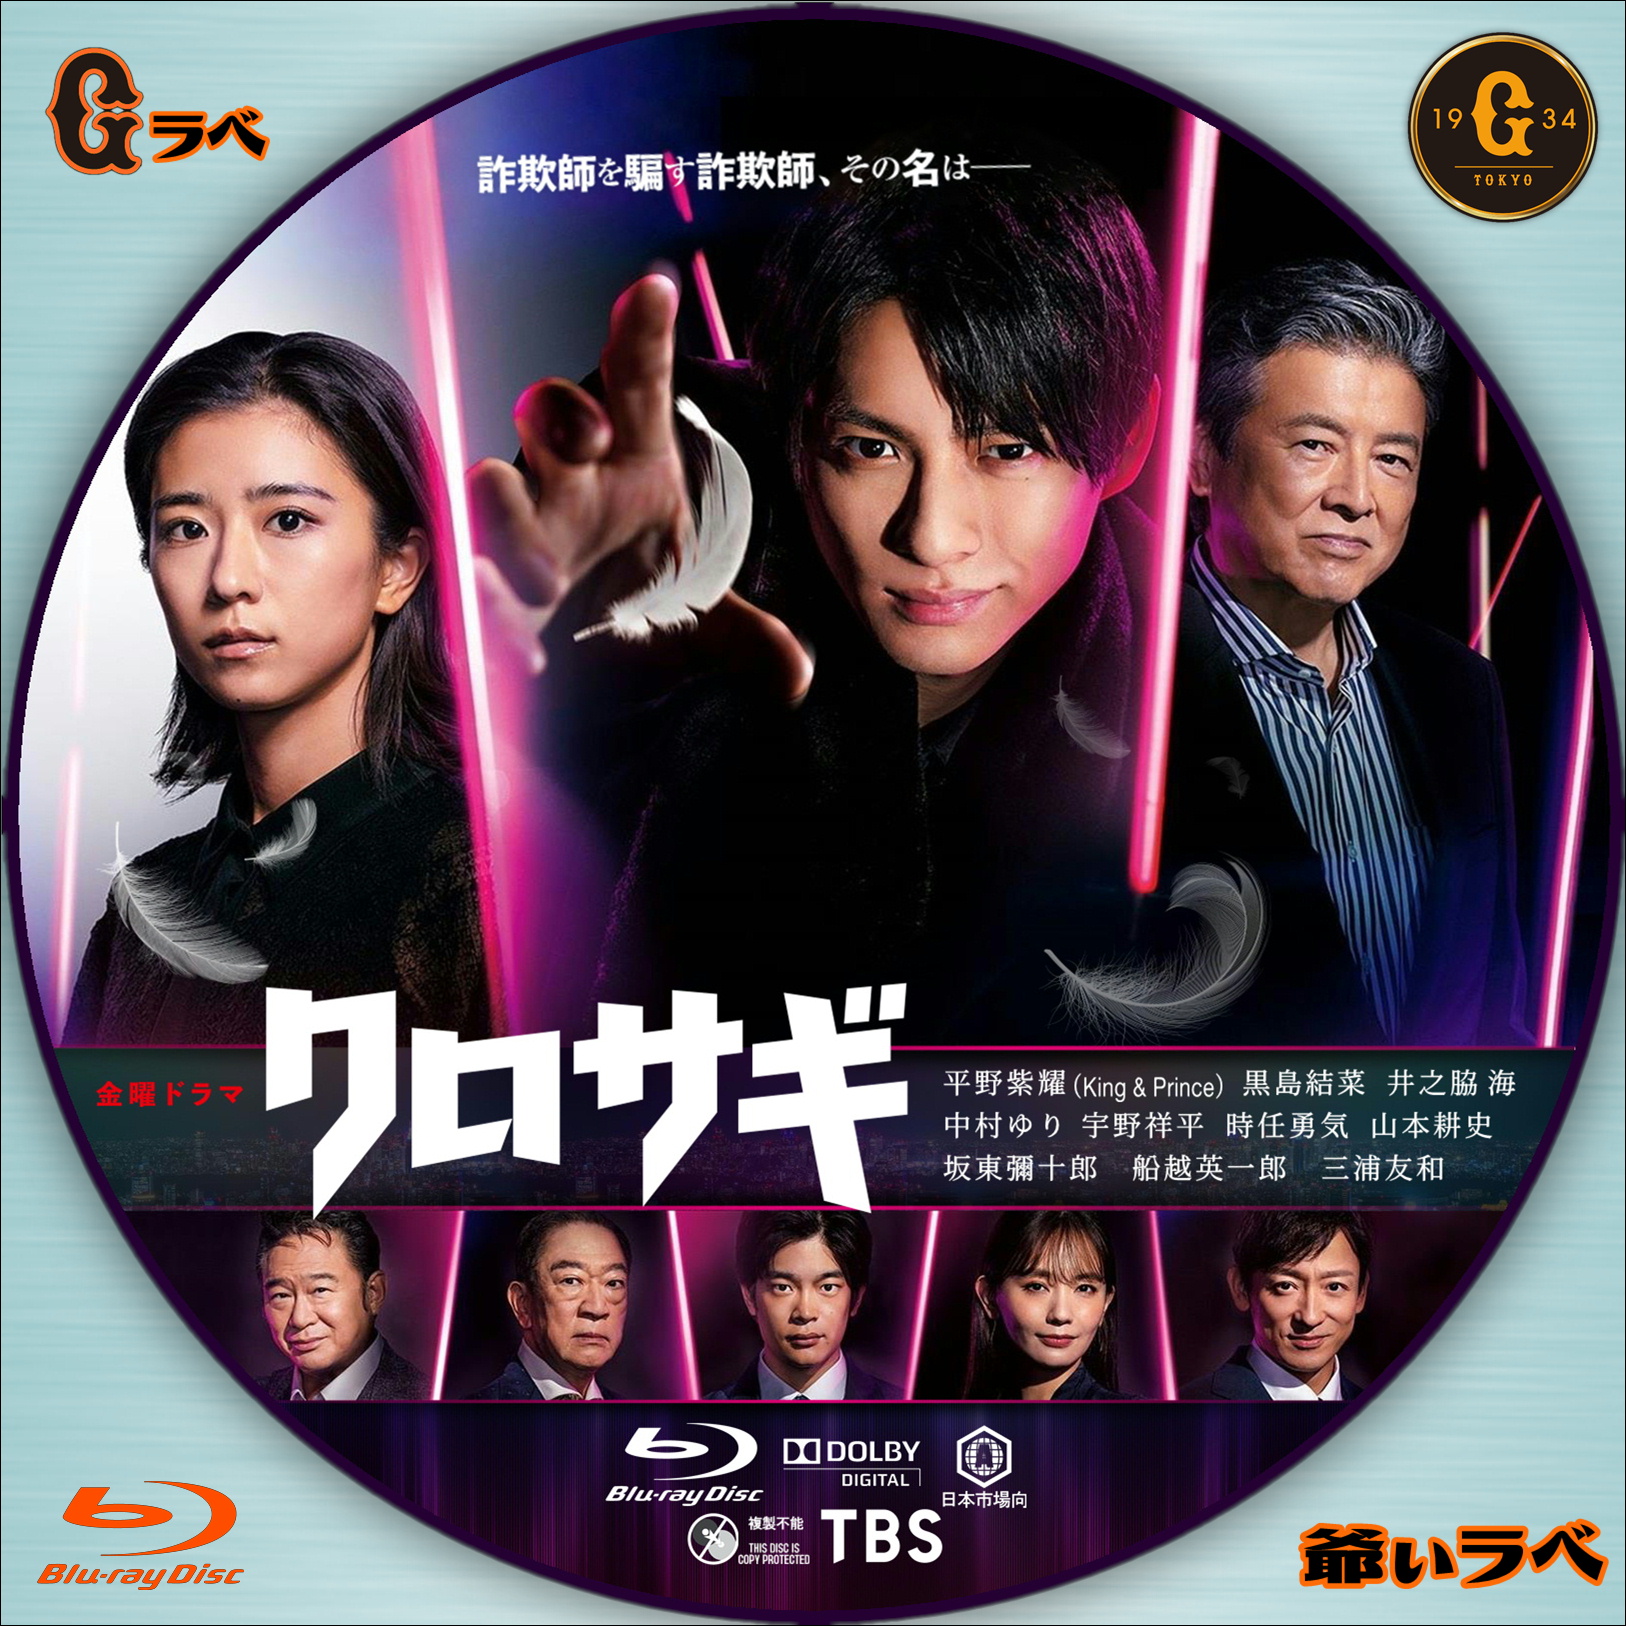 クロサギ(2022年版) Blu-ray BOX〈4枚組〉4-0810-1